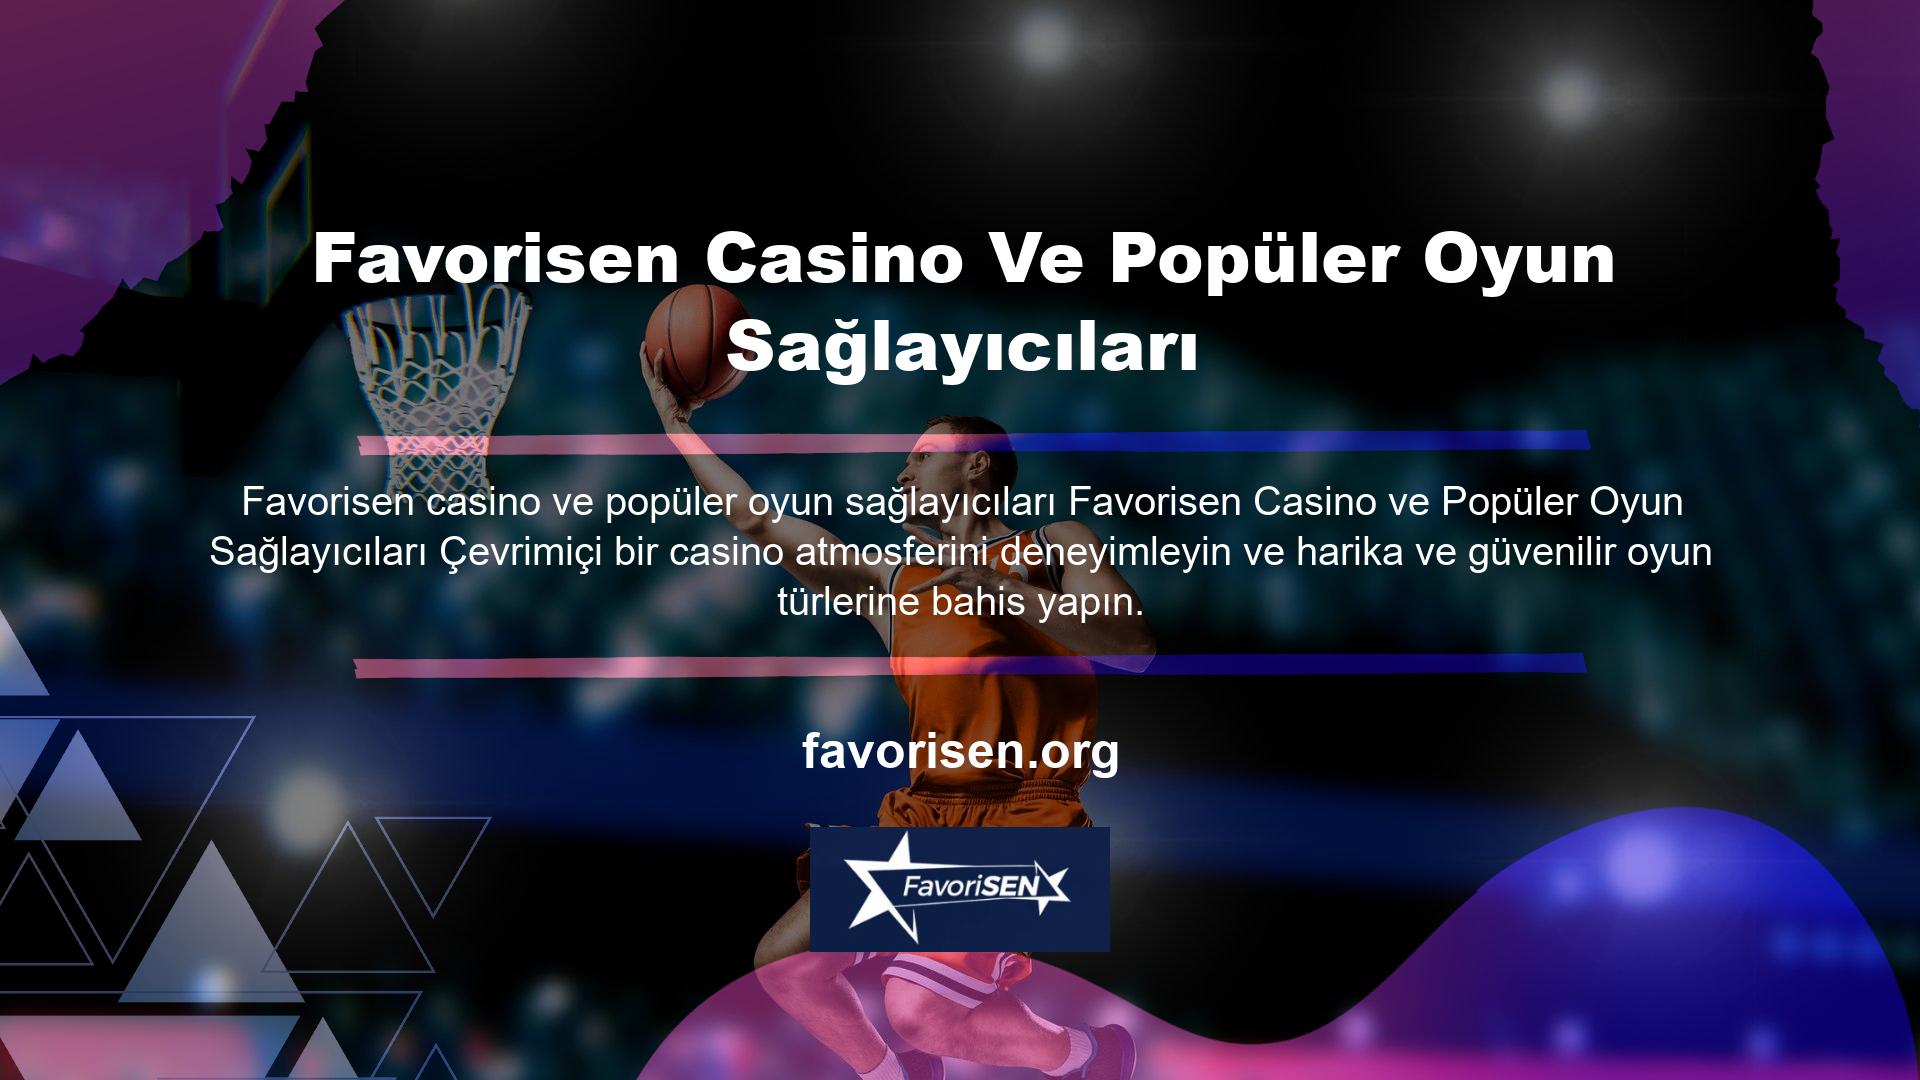 Çevrimiçi casino sitelerinde bulunan casino oyunlarının çeşitliliği şaşırtıcıdır